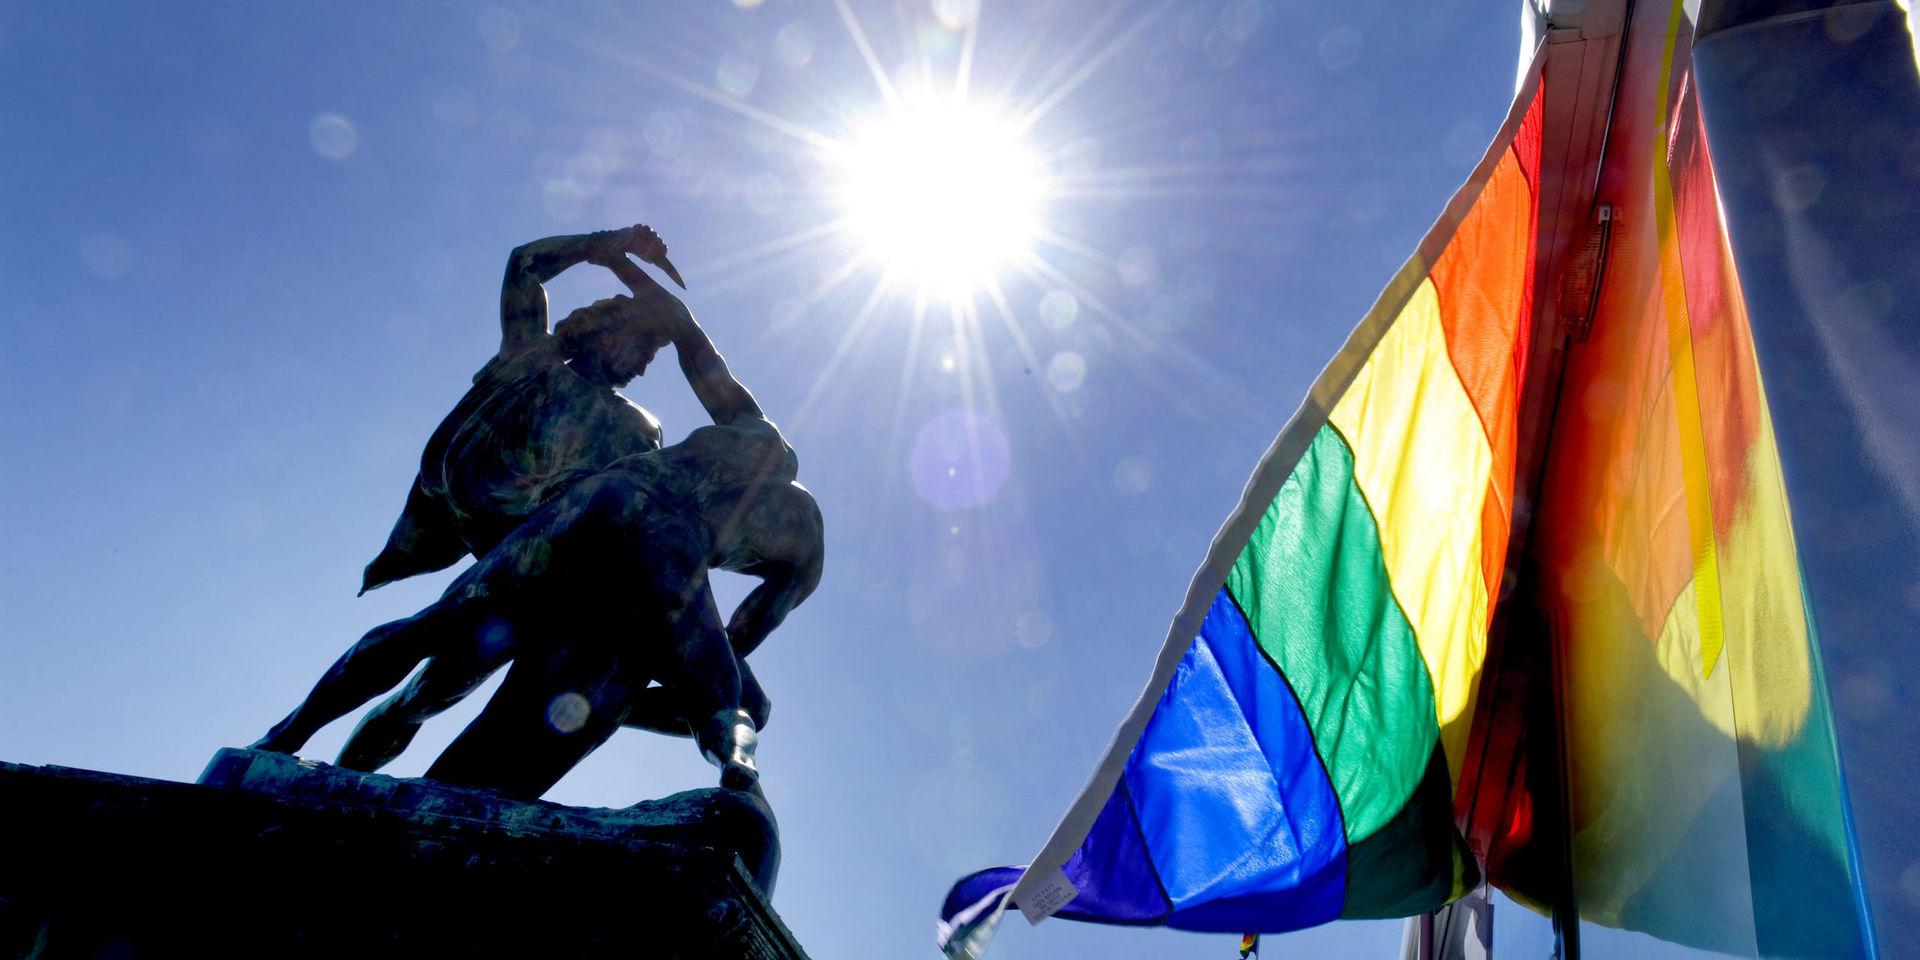 Nu firas West Pride återigen i Göteborg. Prideflaggorna vajar tappert. Denna vecka har varje ställe queertema. Men var finns de queera mötesplatserna resten av året, undrar Sanna Samuelsson.